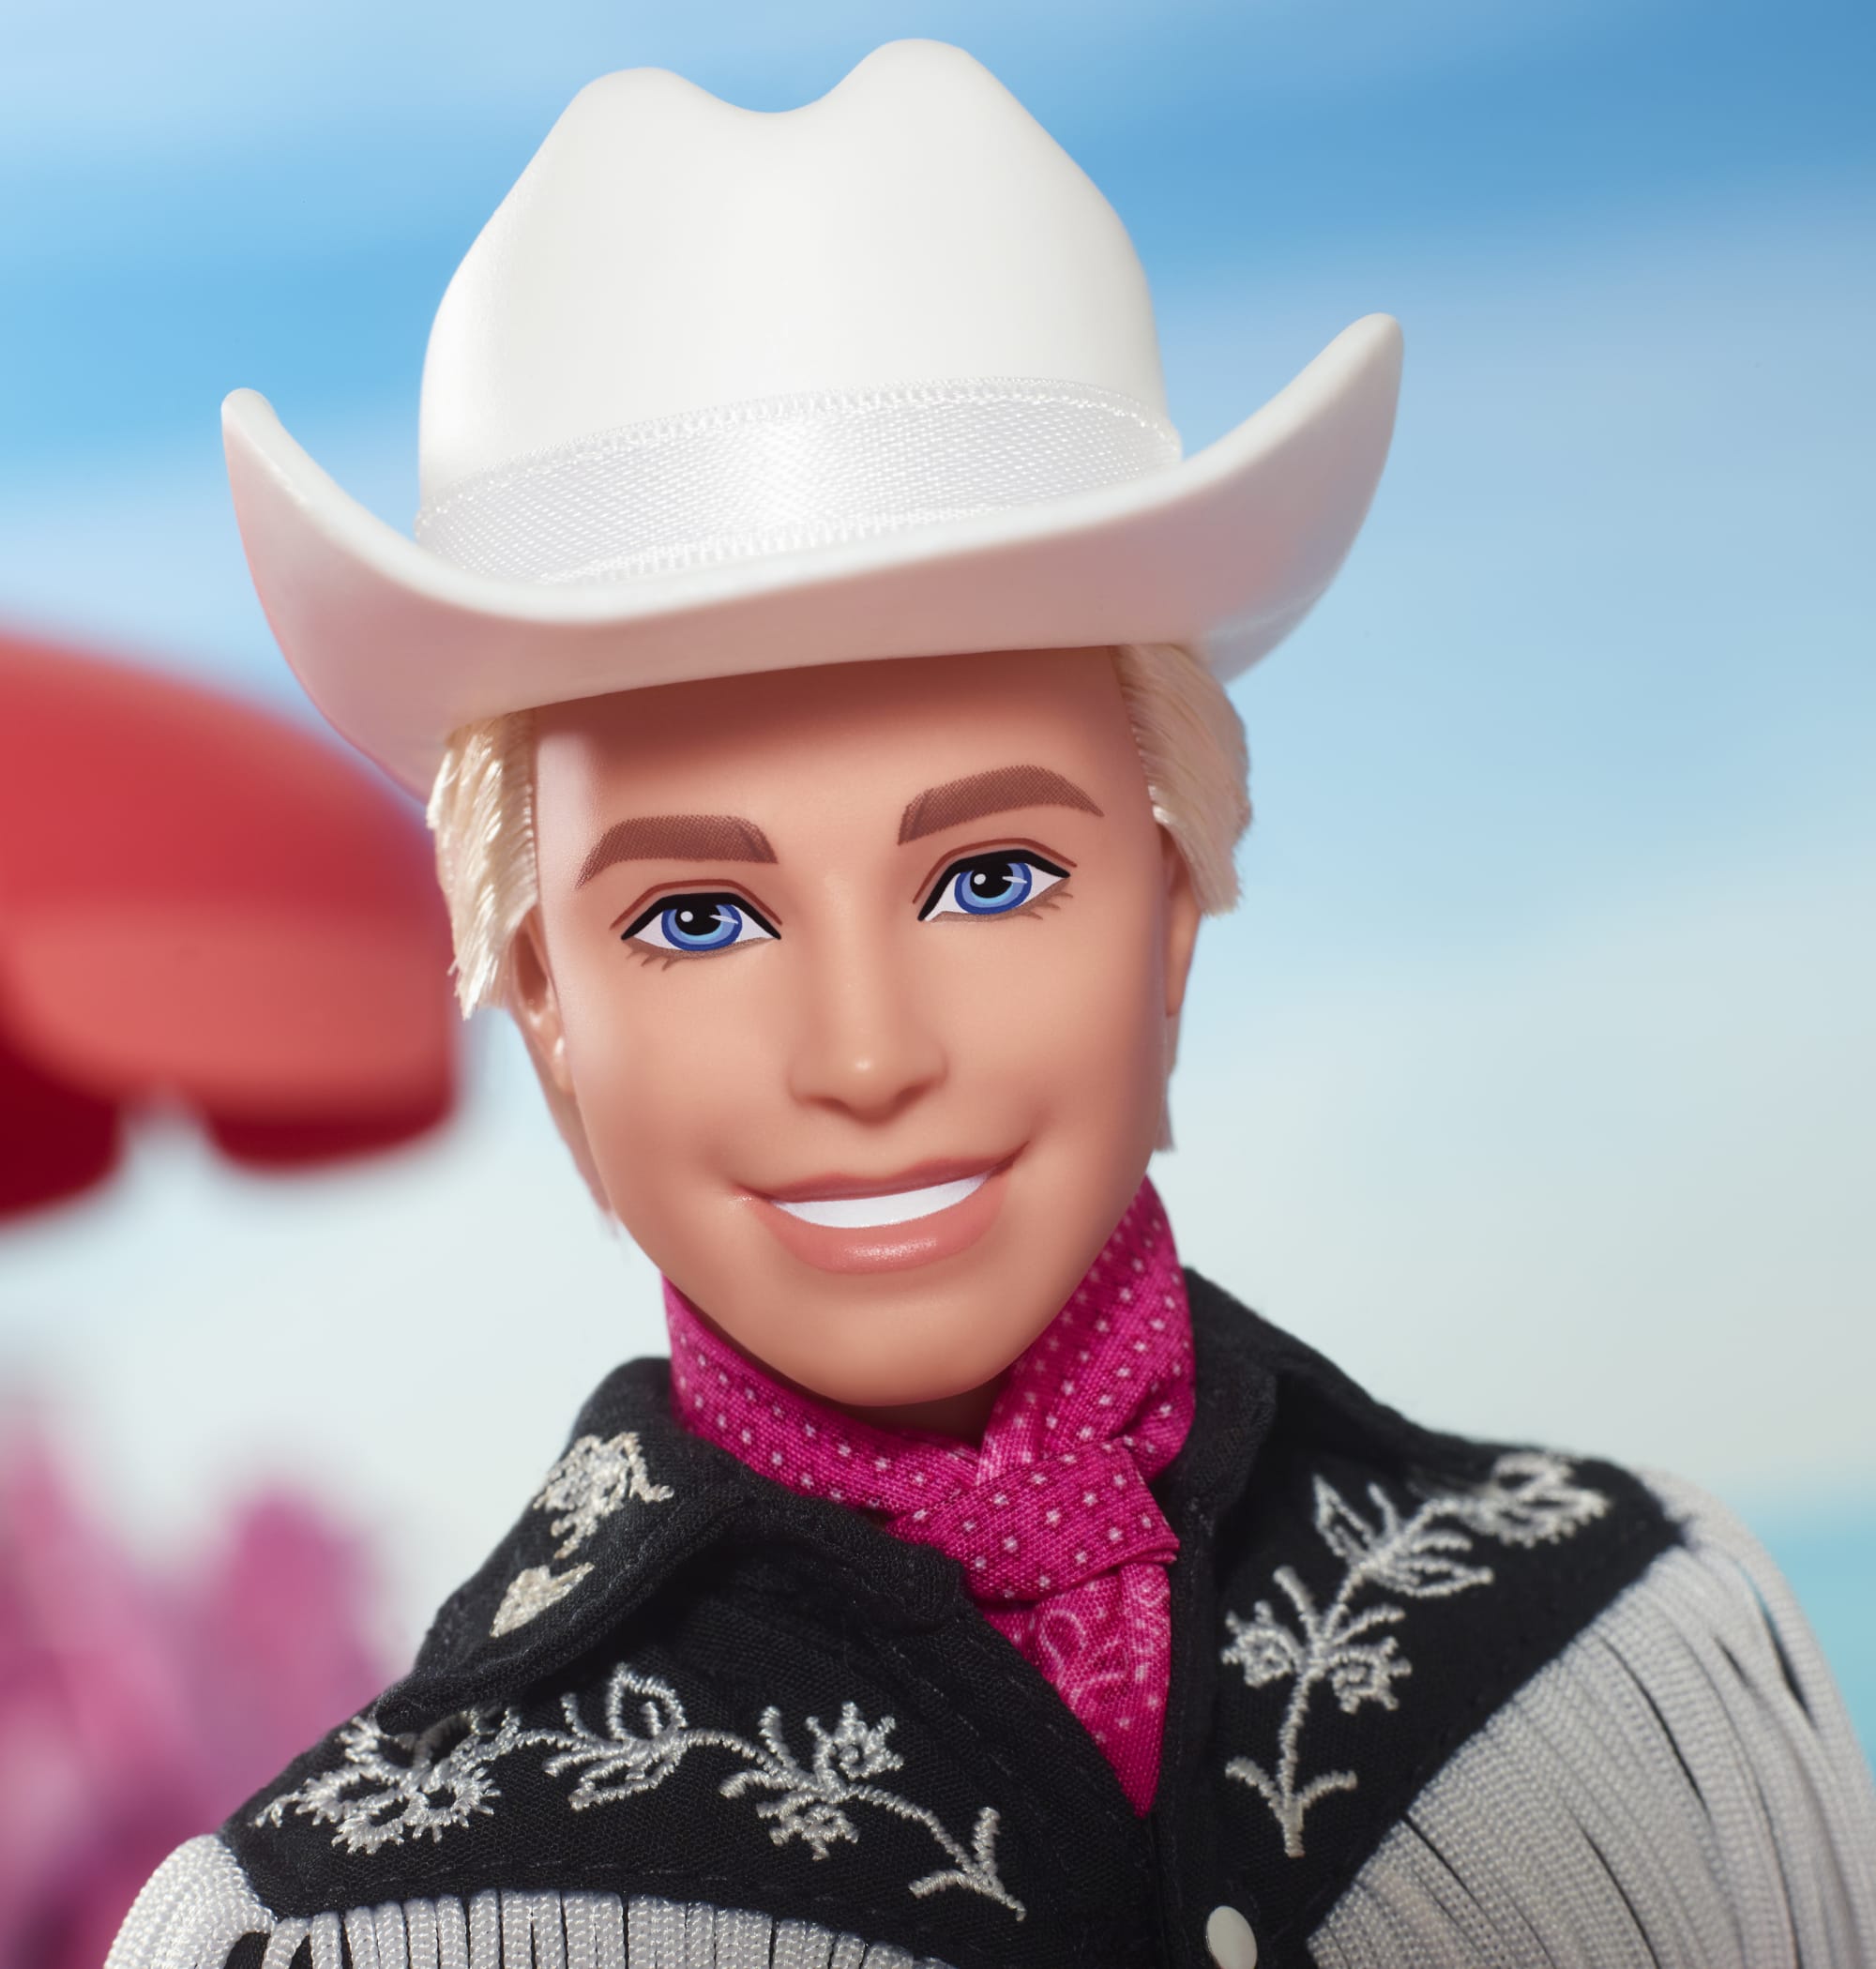 Ken, bambola del film Barbie da collezione con outfit nero e frange  bianche, cappello e stivali da cowboy e bandana rosa, HRF30